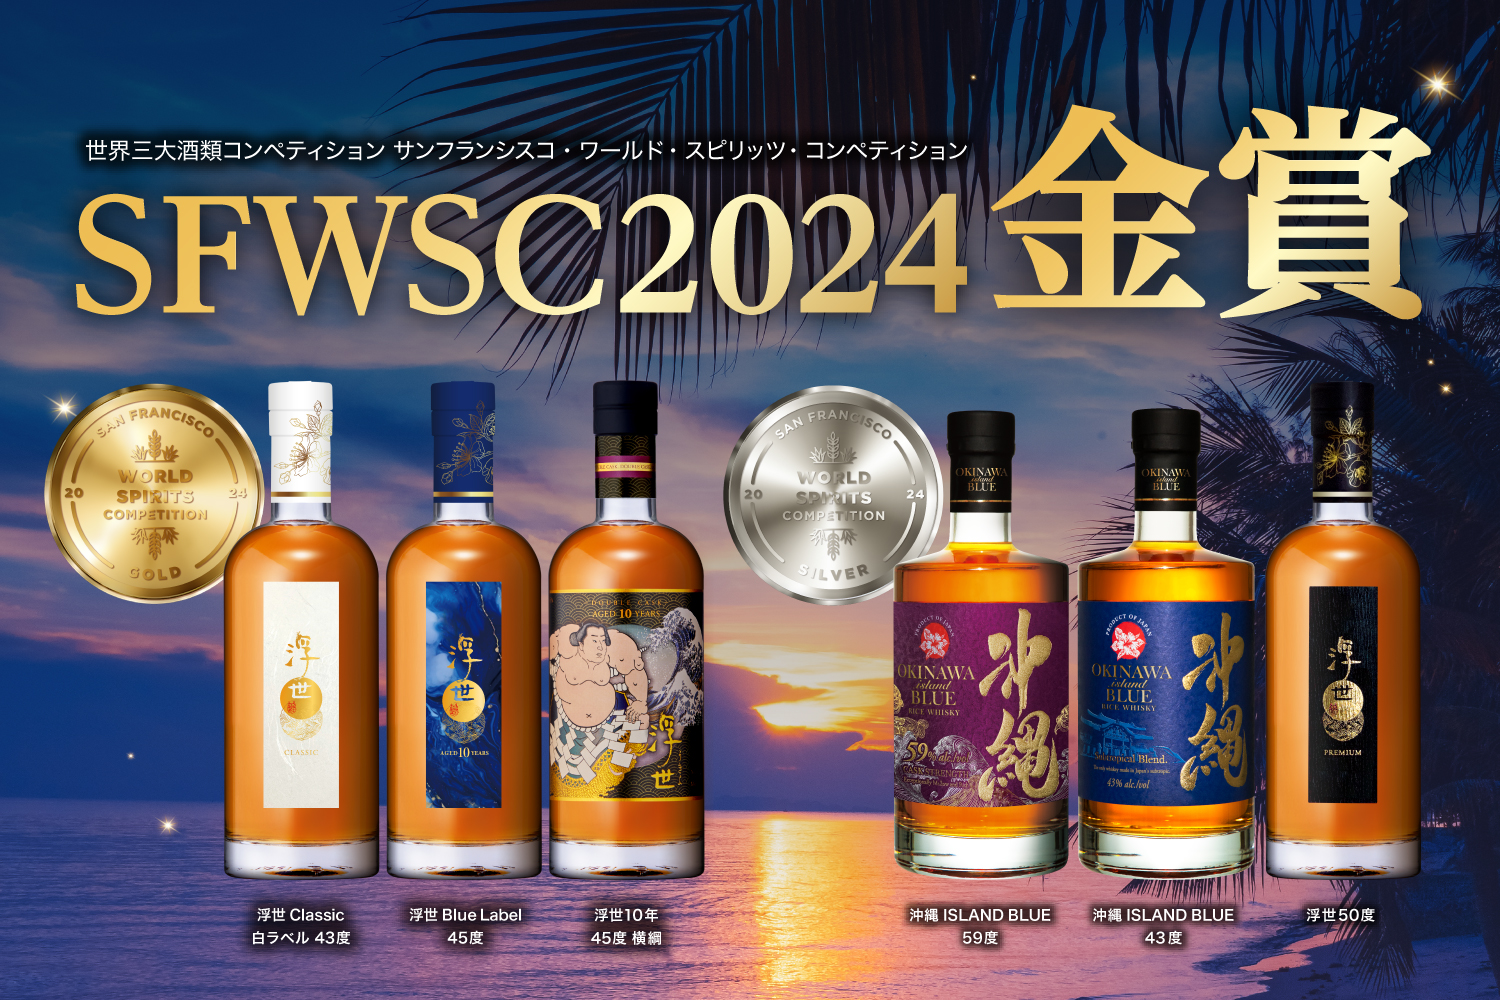 世界的酒類コンペティション「San Francisco World Spirits Competition 2024 (SFWSC)」エントリー商品全てが受賞